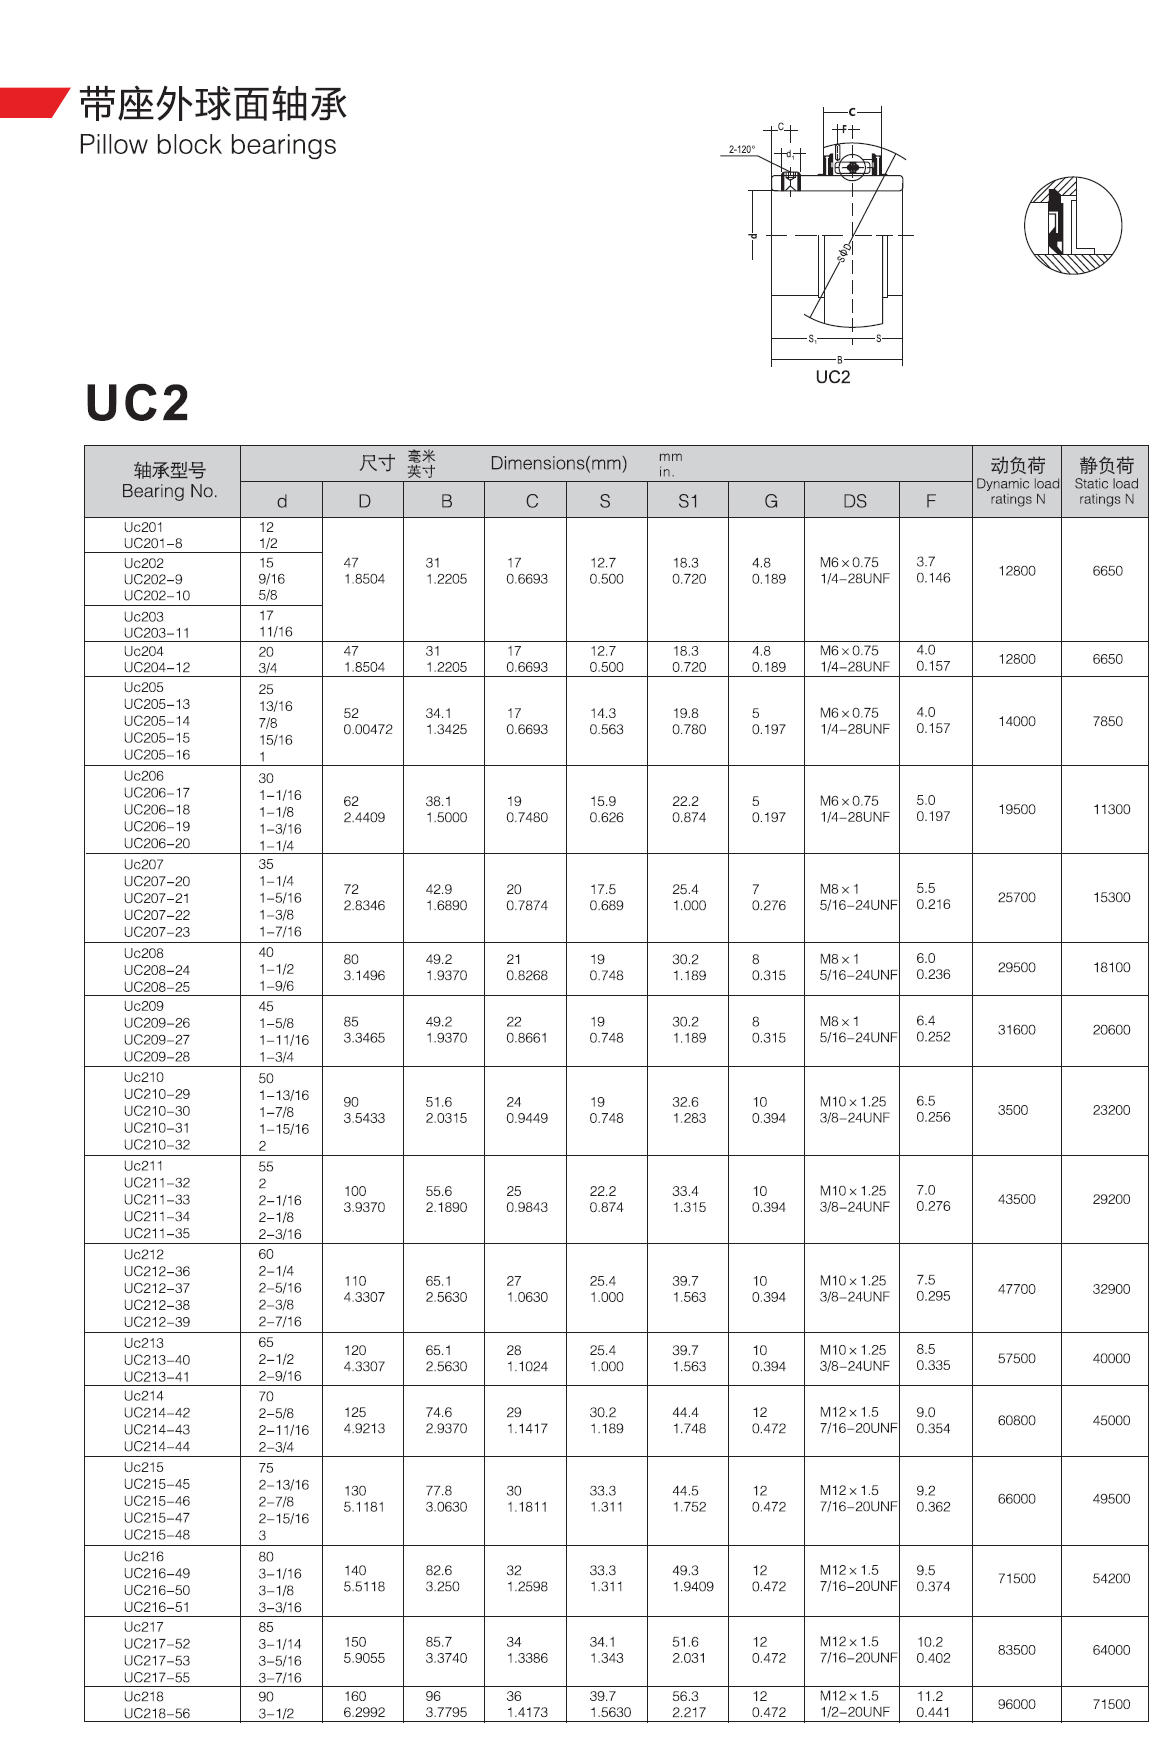 Uc201	 | 
UC201-8	 | 
Uc202	 | 
UC202-9	 | 
UC202-10	 | 
Uc203	 | 
UC203-11	 | 
Uc204	 | 
UC204-12	 | 
Uc205	 | 
UC205-13	 | 
UC205-14	 | 
UC205-15	 | 
UC205-16	 | 
Uc206	 | 
UC206-17	 | 
UC206-18	 | 
UC206-19	 | 
UC206-20	 | 
Uc207	 | 
UC207-20	 | 
UC207-21	 | 
UC207-22	 | 
UC207-23	 | 
Uc208	 | 
UC208-24	 | 
UC208-25	 | 
Uc209	 | 
UC209-26	 | 
UC209-27	 | 
UC209-28	 | 
Uc210	 | 
UC210-29	 | 
UC210-30	 | 
UC210-31	 | 
UC210-32	 | 
Uc211	 | 
UC211-32	 | 
UC211-33	 | 
UC211-34	 | 
UC211-35	 | 
Uc212	 | 
UC212-36	 | 
UC212-37	 | 
UC212-38	 | 
UC212-39	 | 
Uc213	 | 
UC213-40	 | 
UC213-41	 | 
Uc214	 | 
UC214-42	 | 
UC214-43	 | 
UC214-44	 | 
Uc215	 | 
UC215-45	 | 
UC215-46	 | 
UC215-47	 | 
UC215-48	 | 
Uc216	 | 
UC216-49	 | 
UC216-50	 | 
UC216-51	 | 
Uc217	 | 
UC217-52	 | 
UC217-53	 | 
UC217-55	 | 
Uc218	 | 
UC218-56	 | 